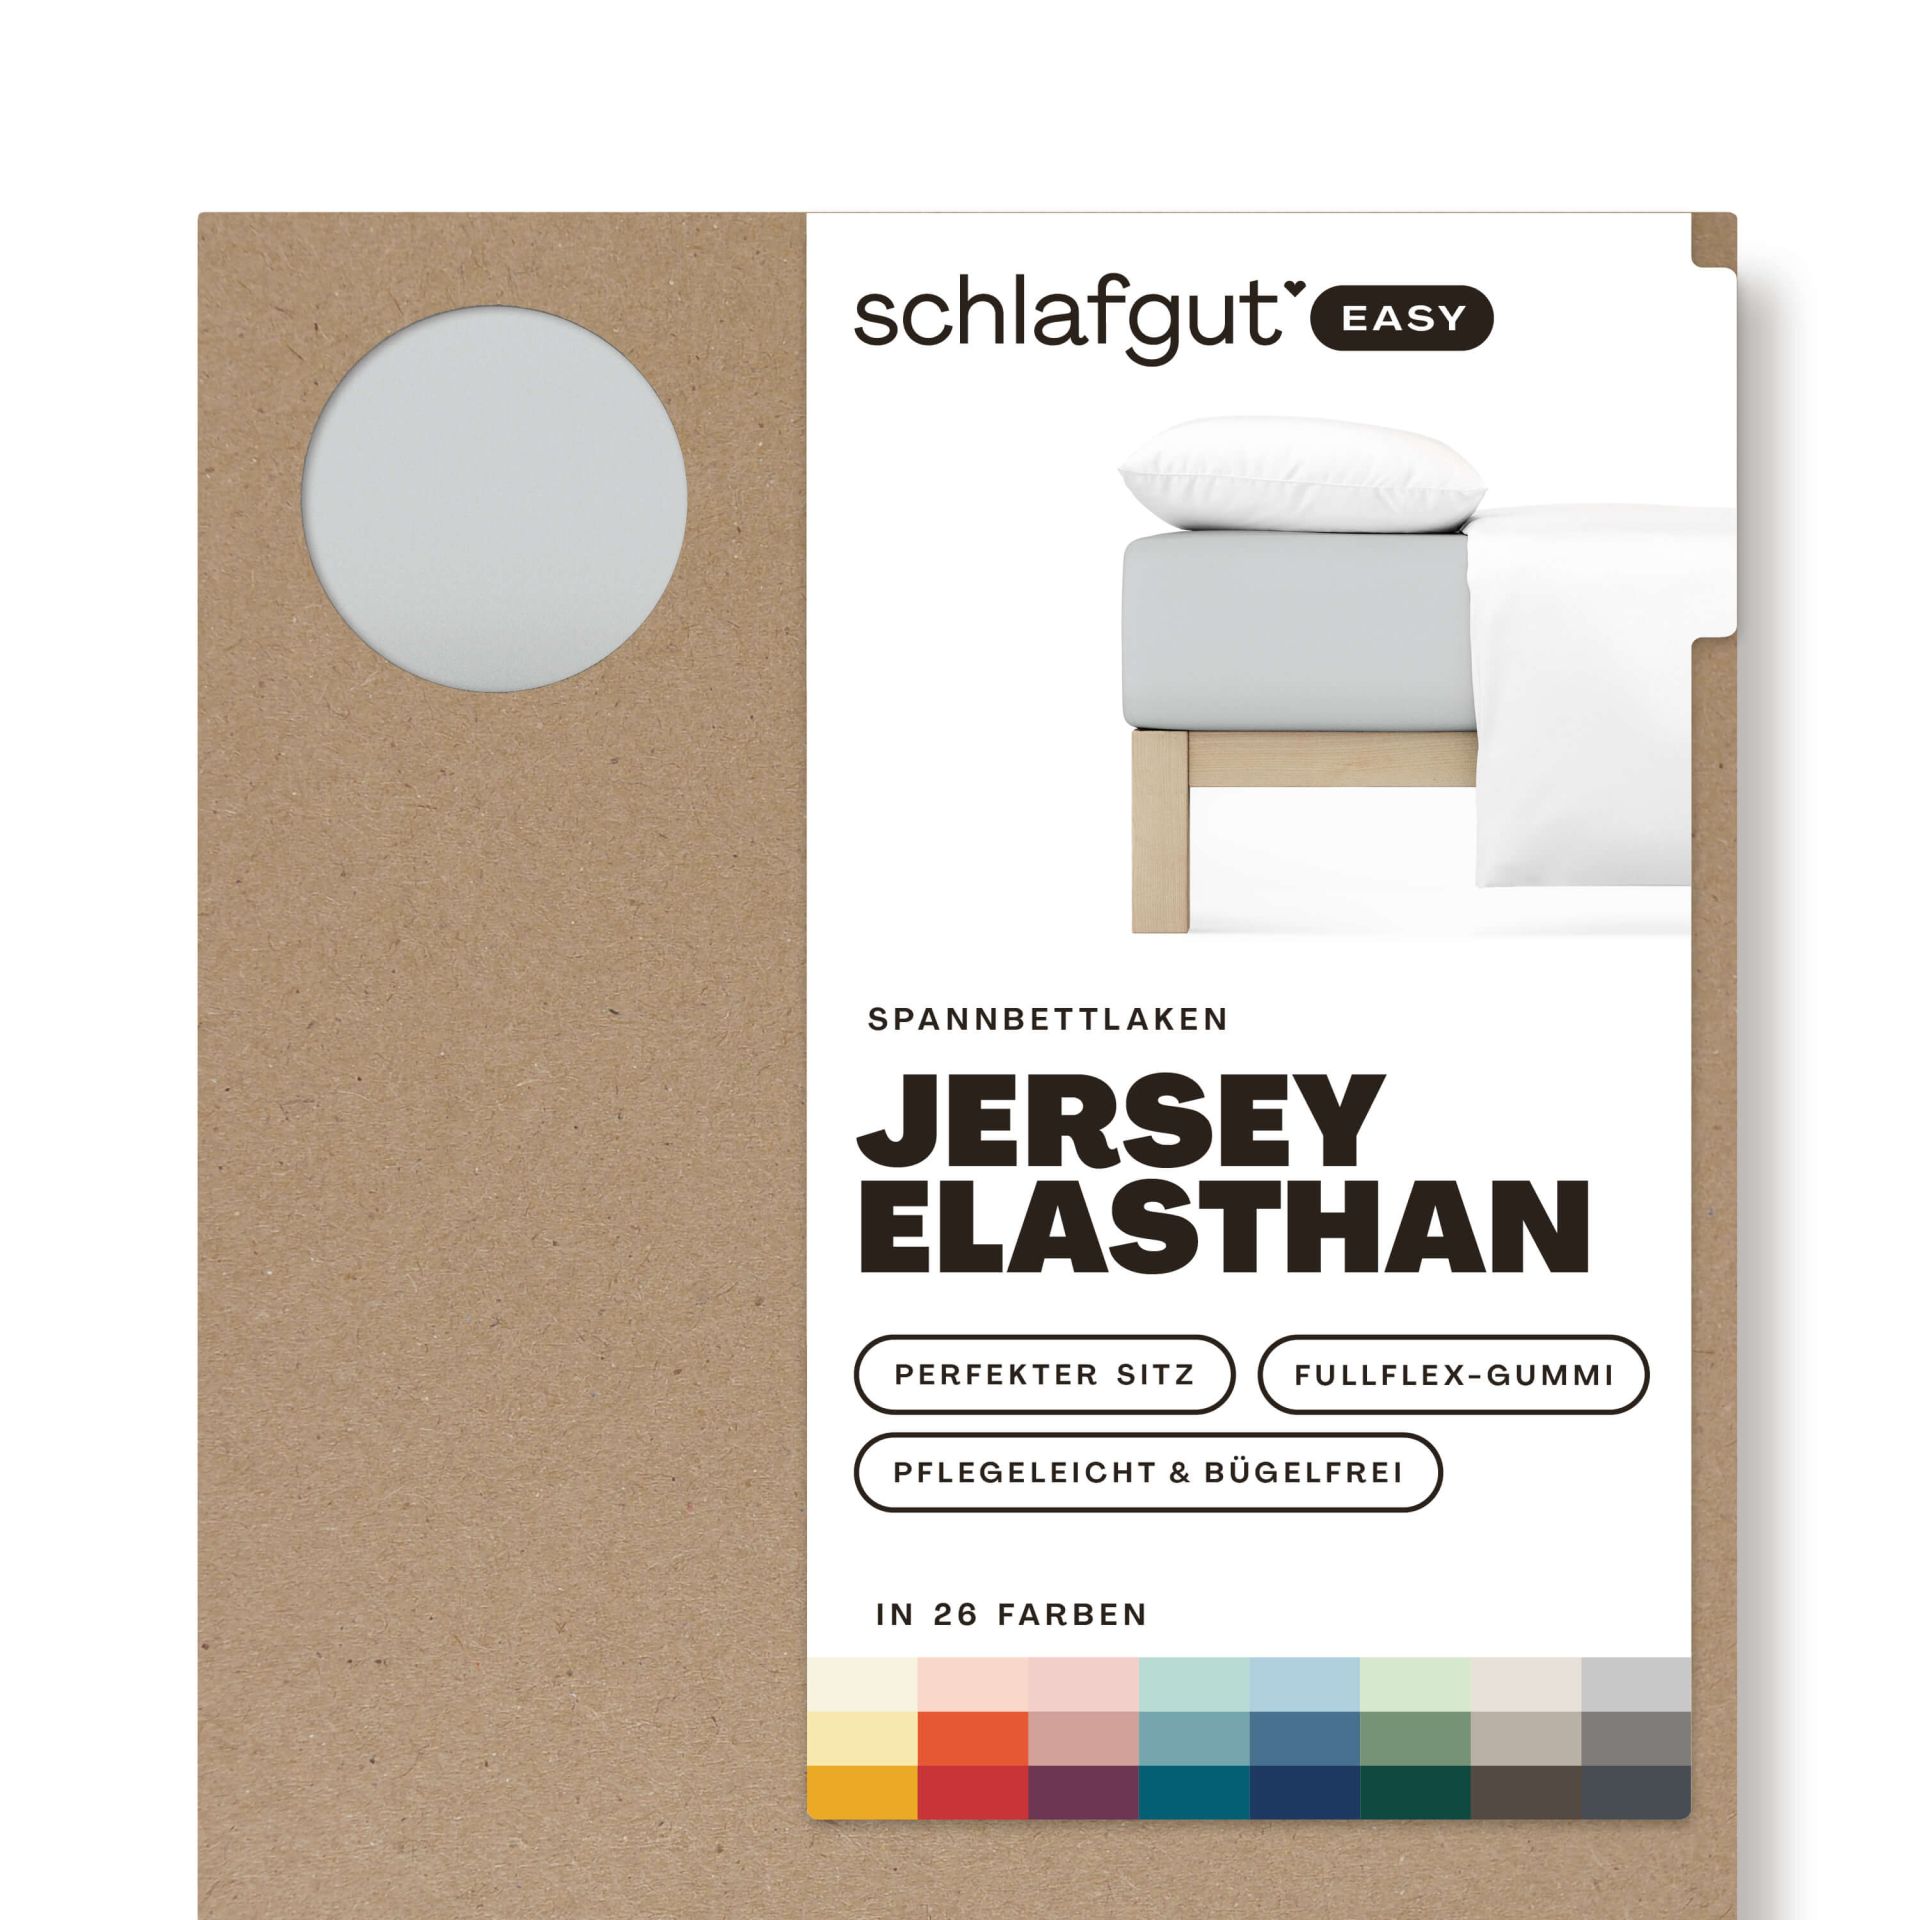 Das Produktbild vom Spannbettlaken der Reihe Easy Elasthan in Farbe grey light von Schlafgut